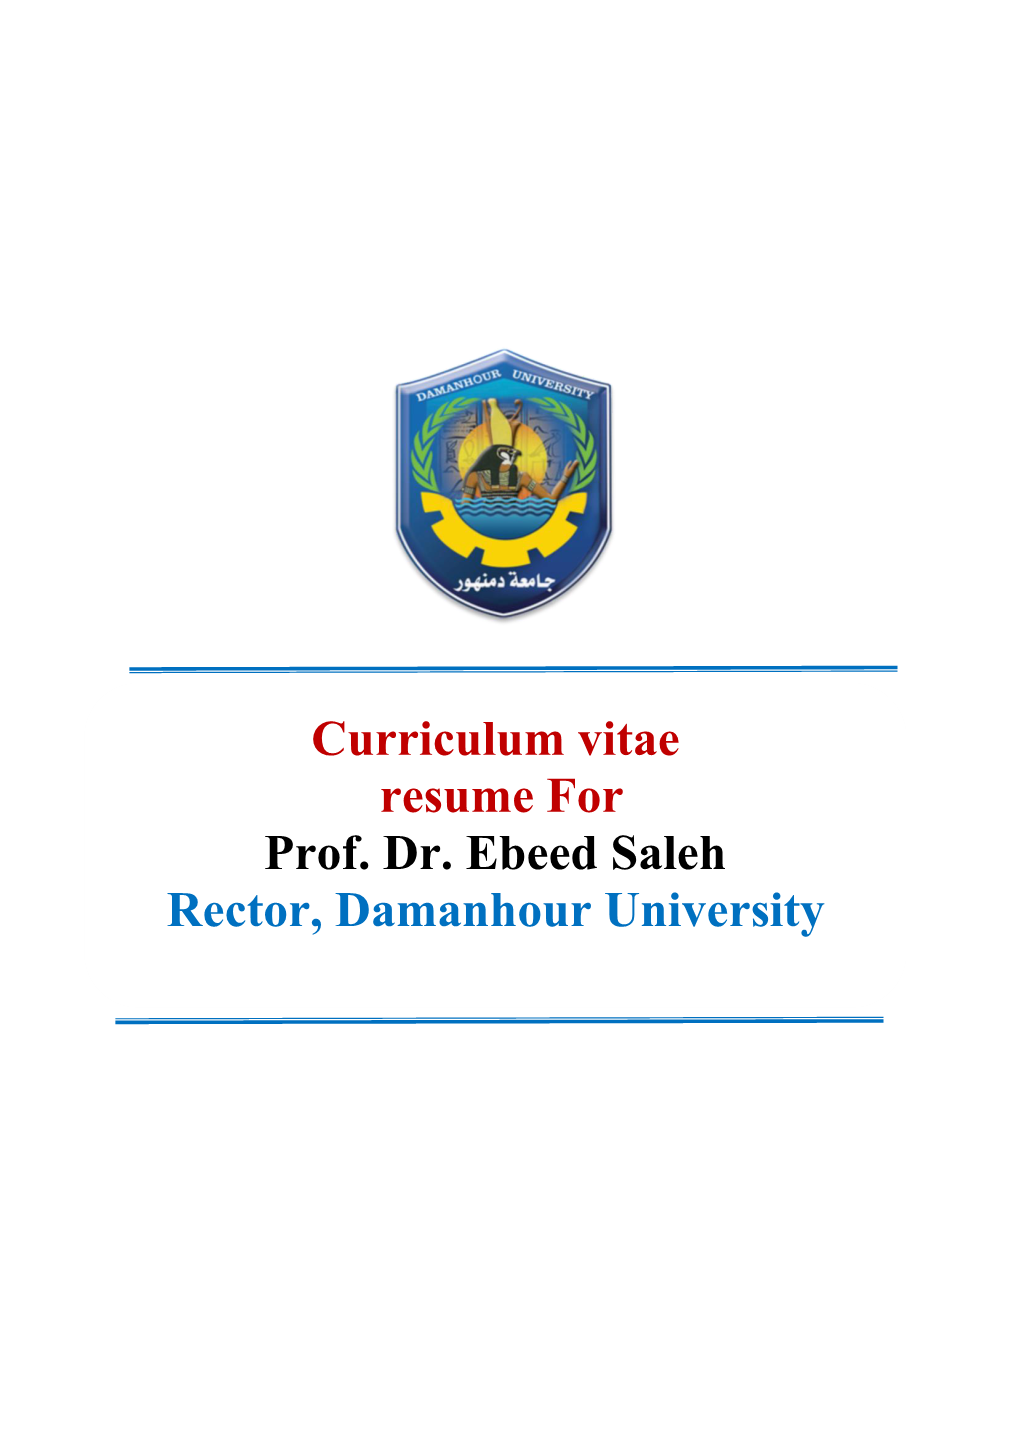 Curriculum Vitae Resume for Prof. Dr. Ebeed Saleh Rector, Damanhour University